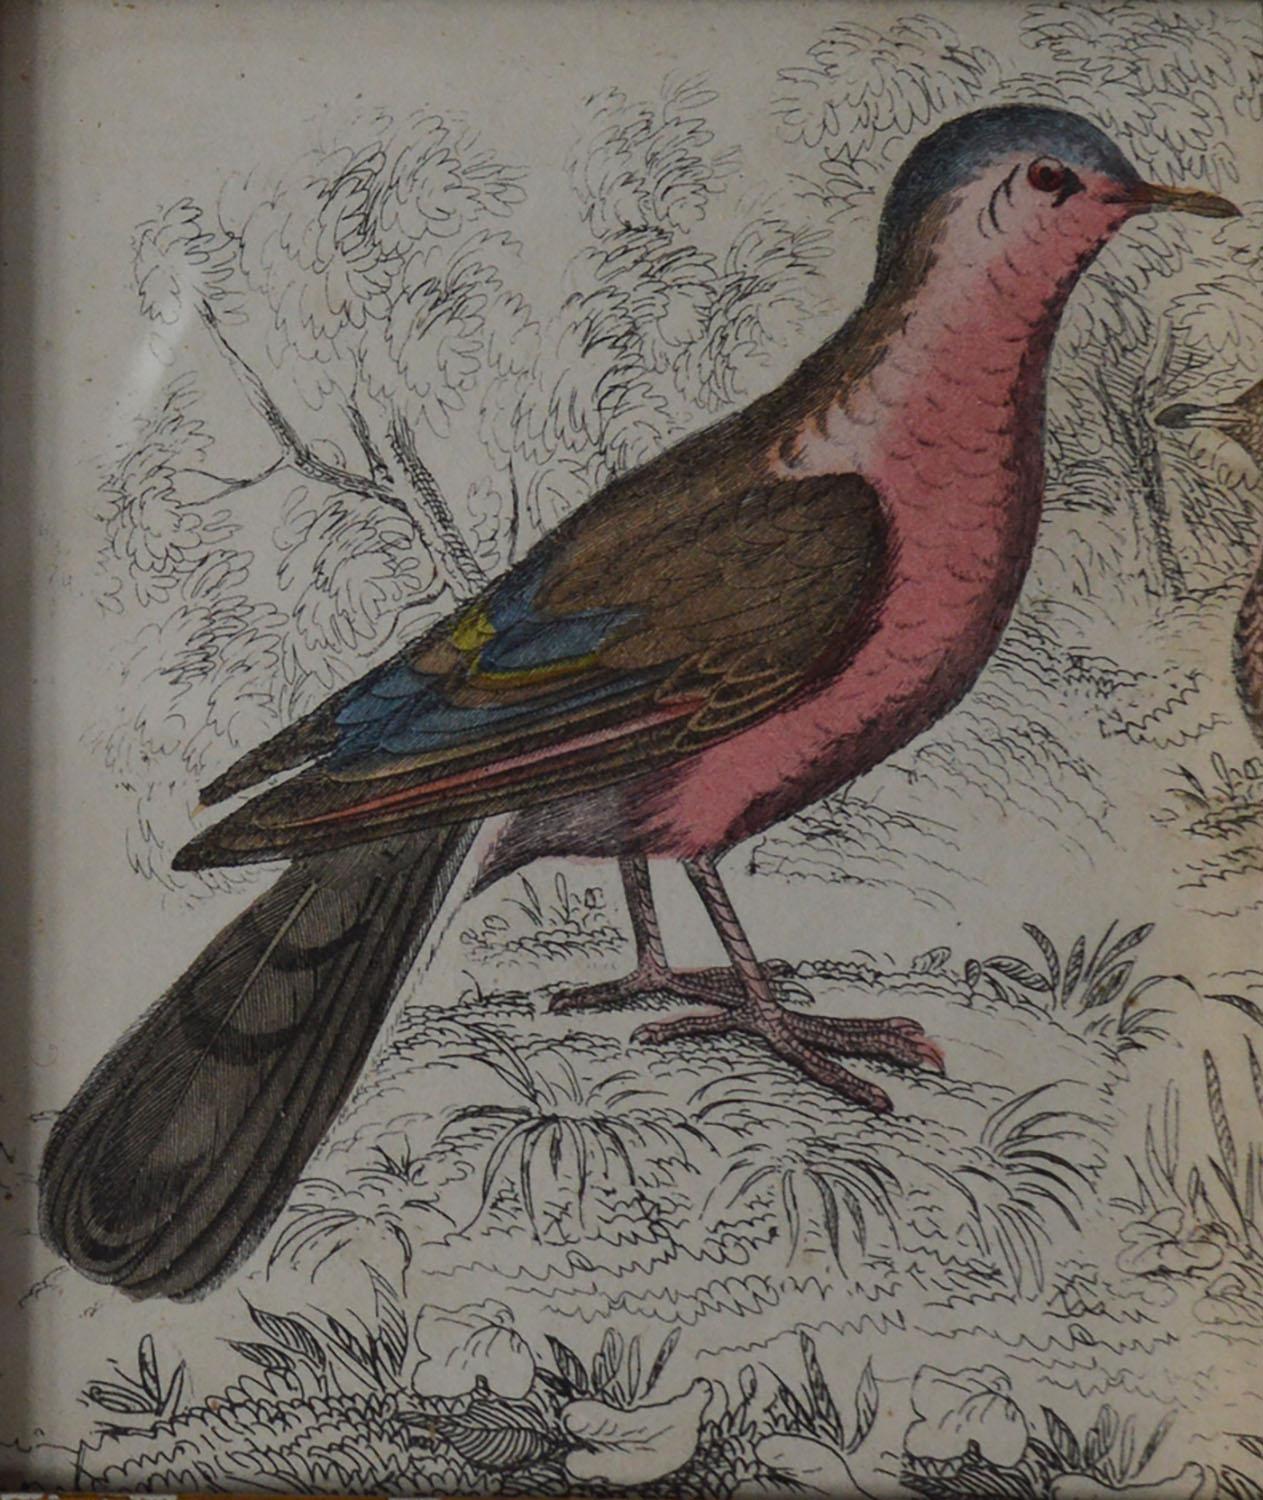 Folk Art Original Antique Print of a Red Bird, 1847